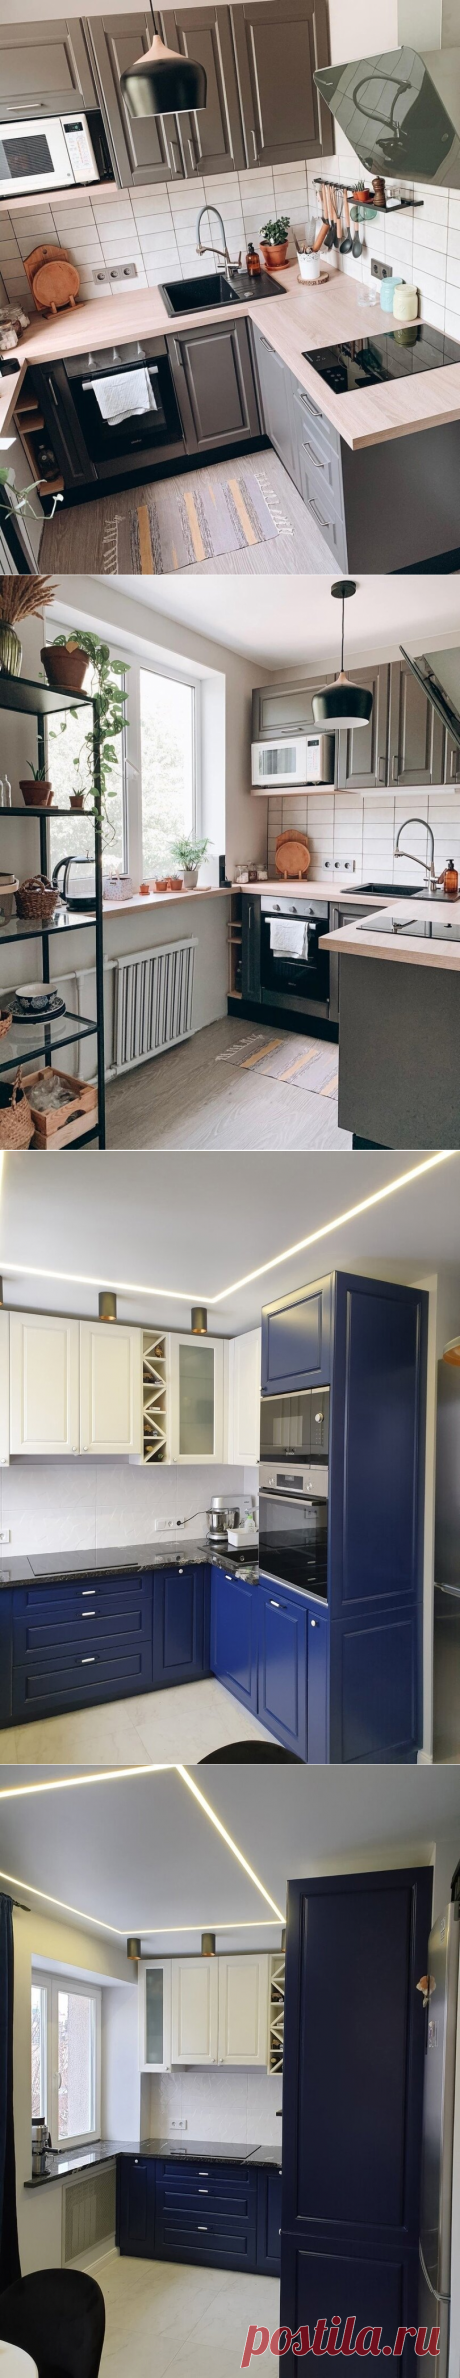 2 реальных примера объединения кухни и гостиной в "хрущевке" от дизайнера. | SMALLFLAT.RU | Яндекс Дзен